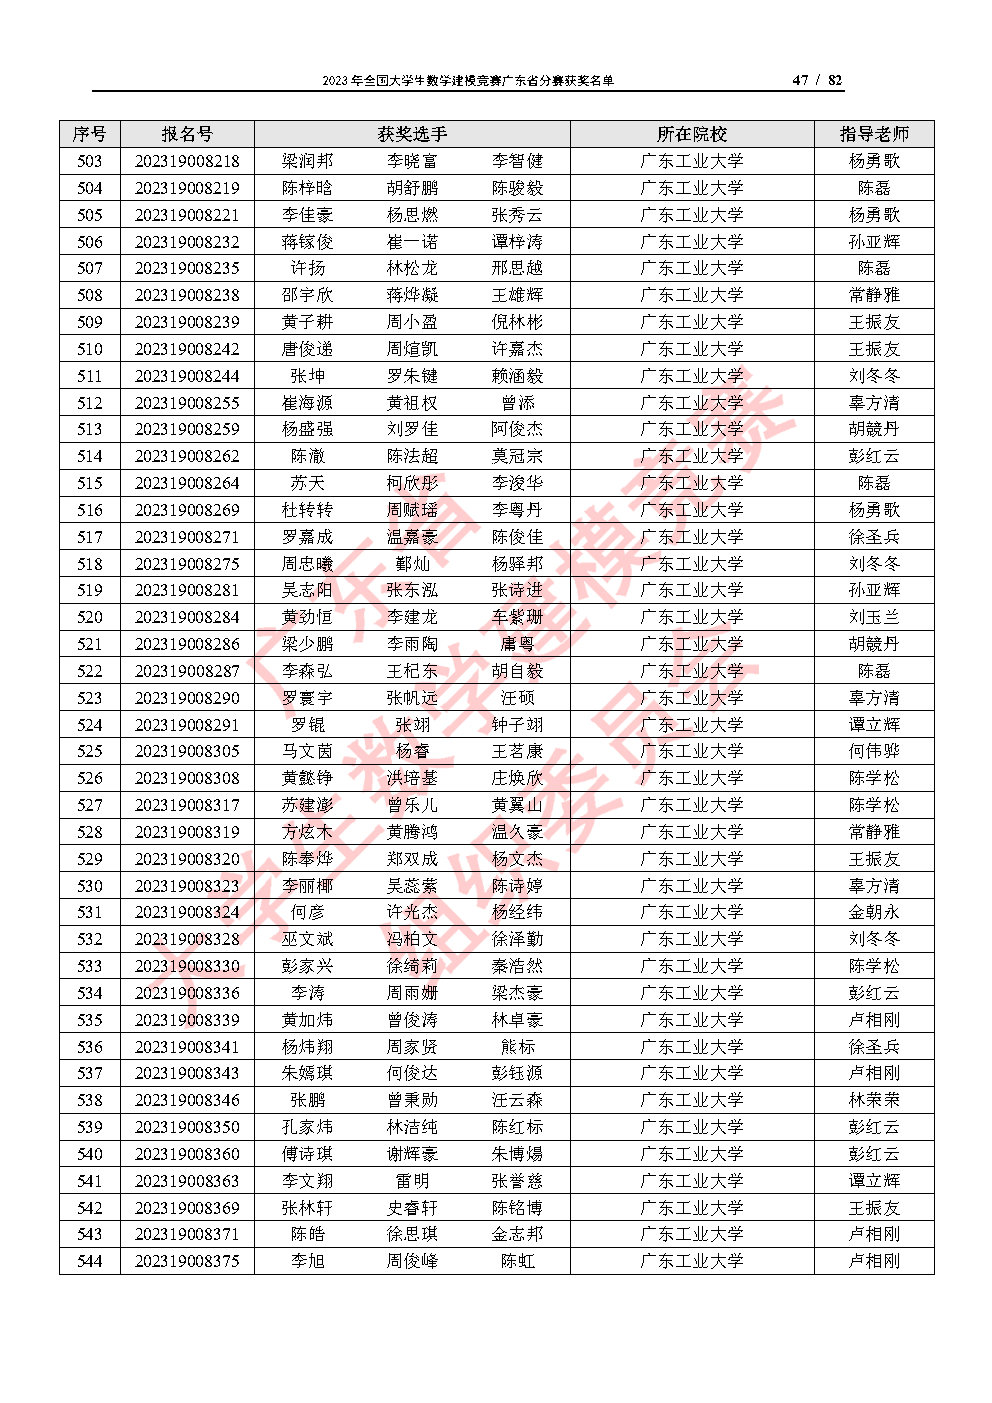 2023年全国大学生数学建模竞赛广东省分赛获奖名单_Page47.jpg